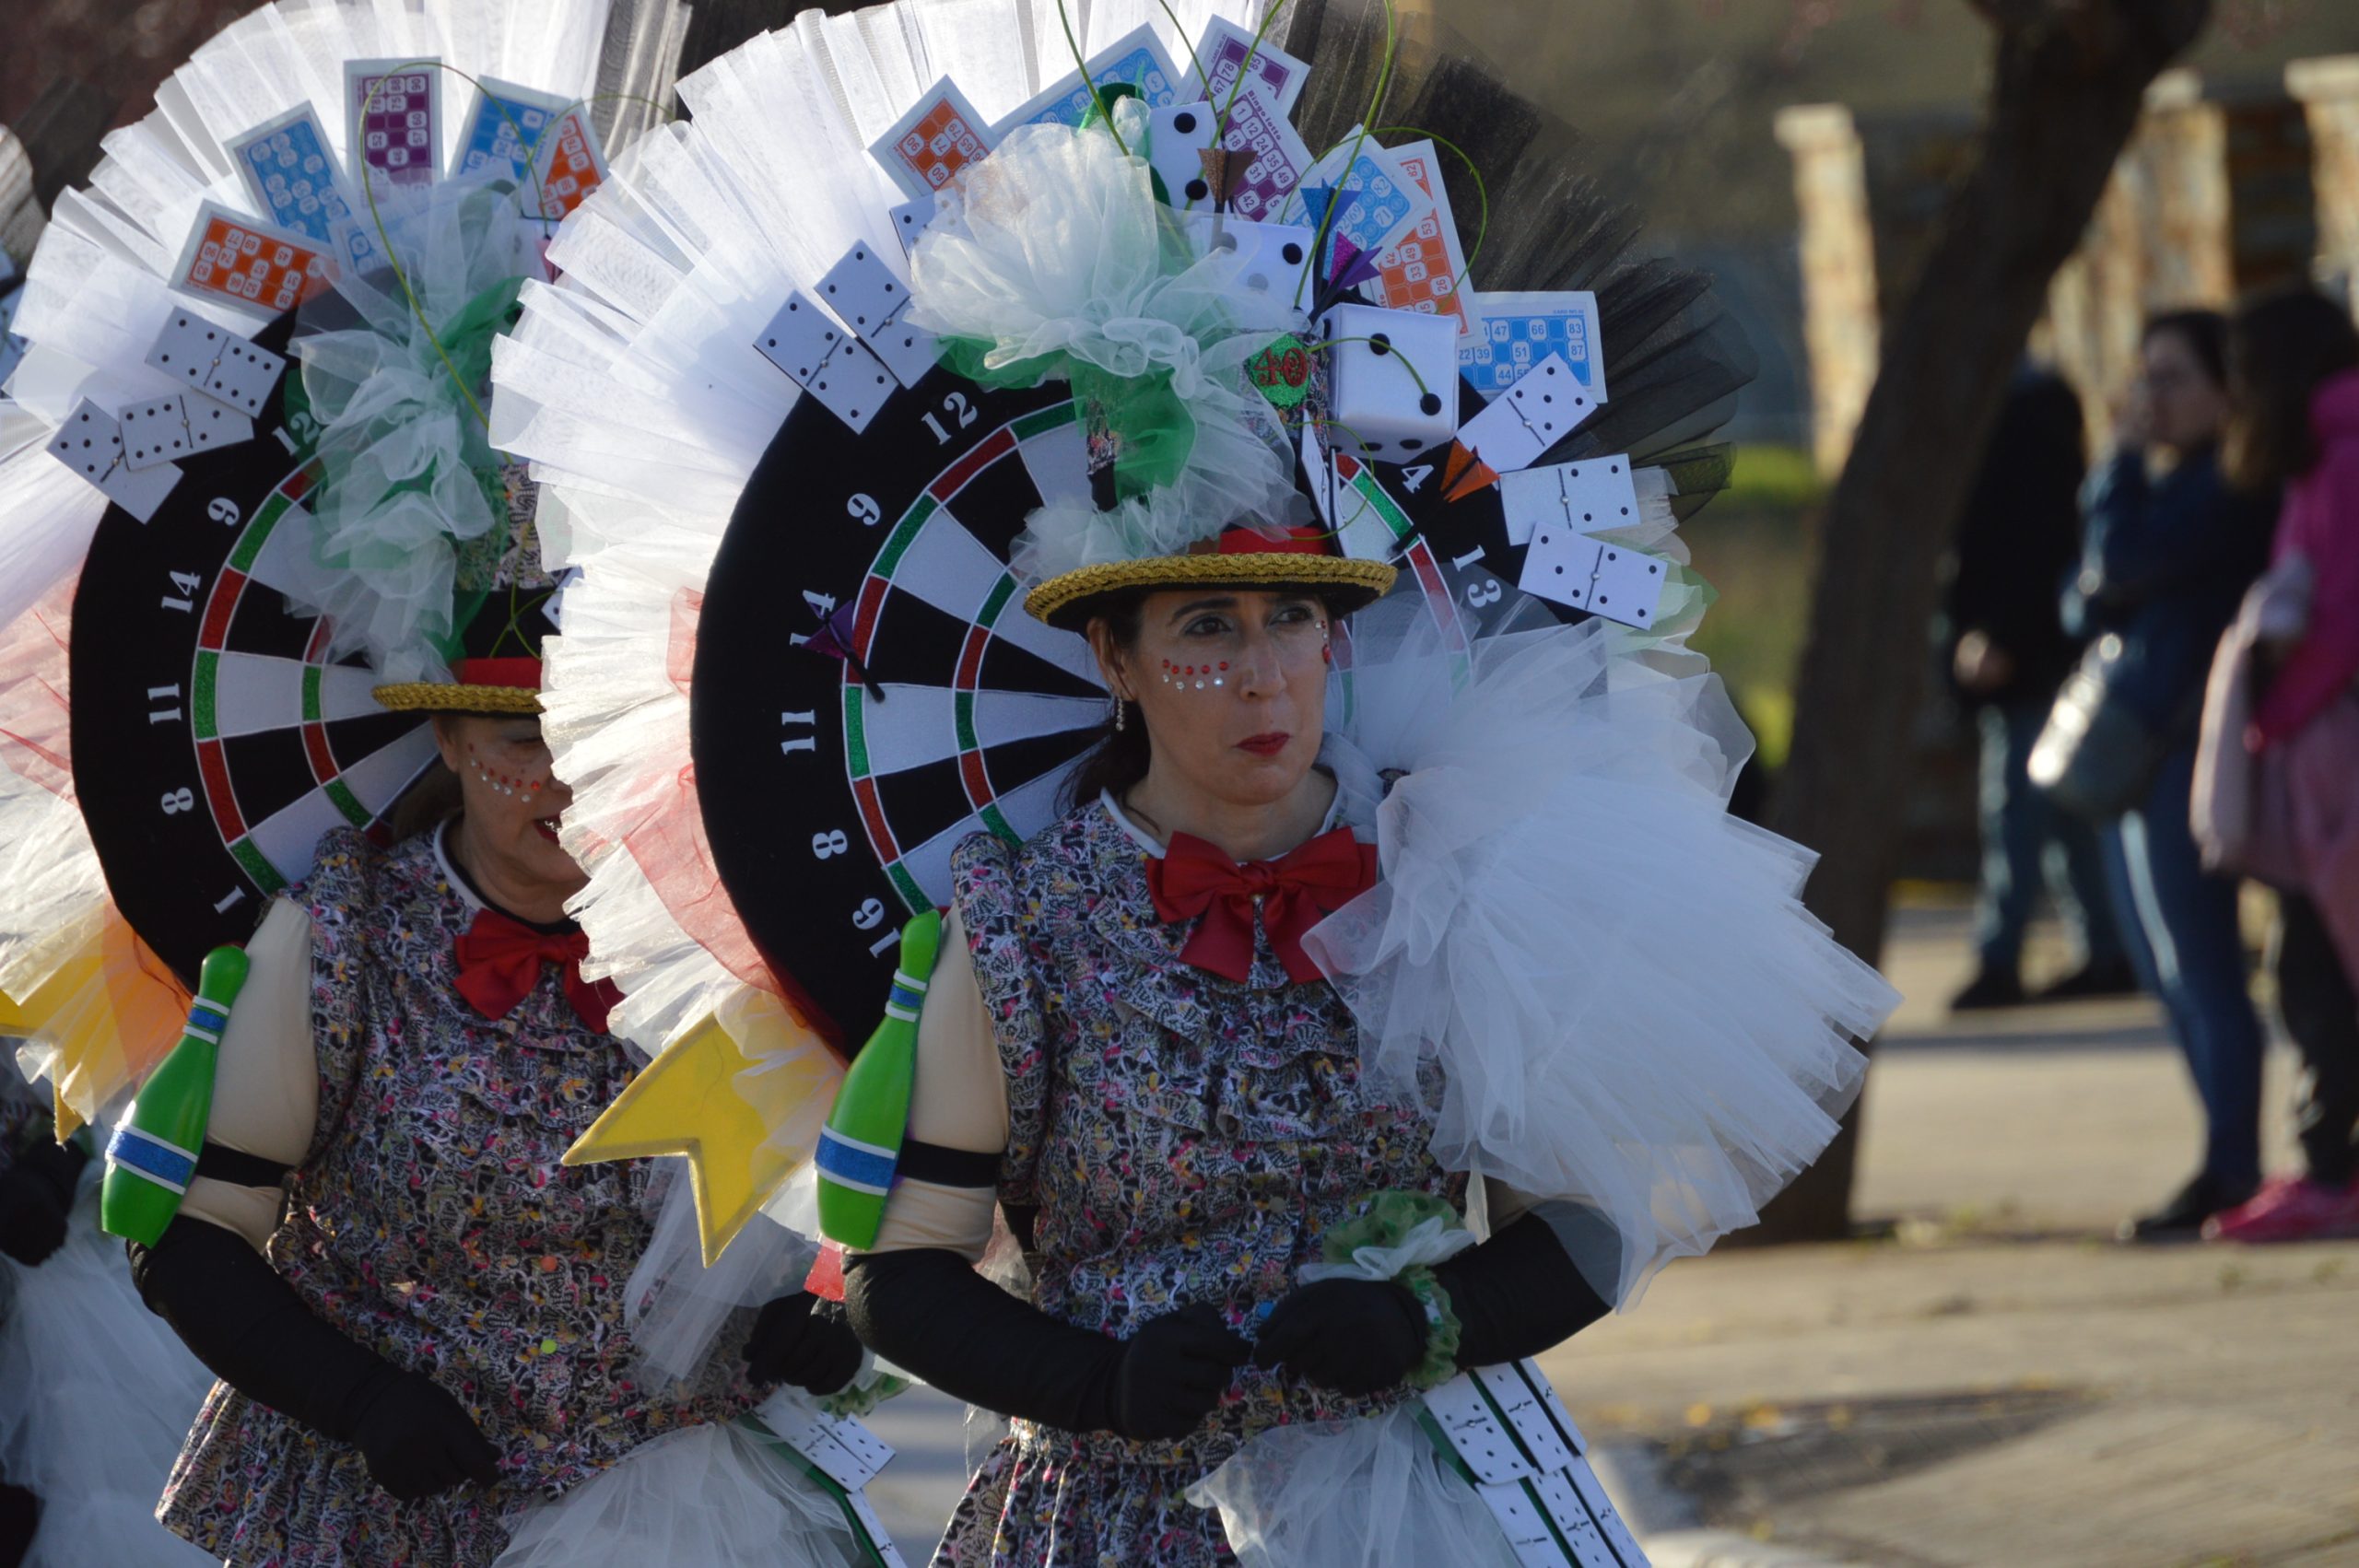 La alegría del Carnaval recorre Cubillos del Sil bajo un sol casi-primaveral 40